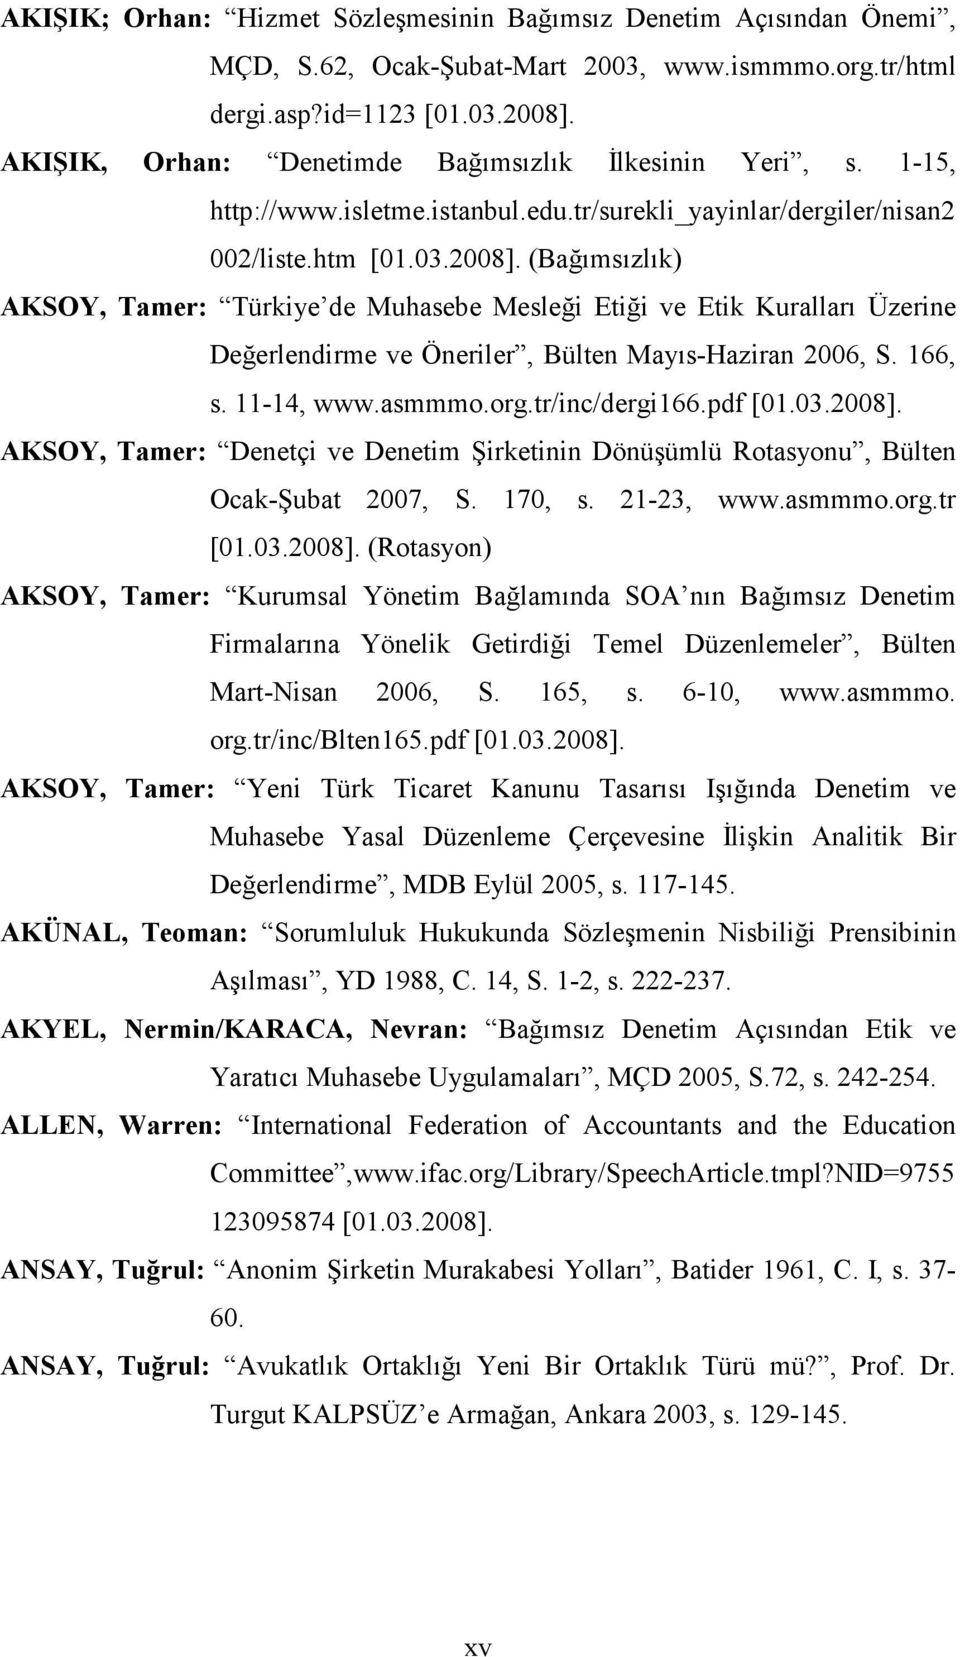 (Bağımsızlık) AKSOY, Tamer: Türkiye de Muhasebe Mesleği Etiği ve Etik Kuralları Üzerine Değerlendirme ve Öneriler, Bülten Mayıs-Haziran 2006, S. 166, s. 11-14, www.asmmmo.org.tr/inc/dergi166.pdf [01.